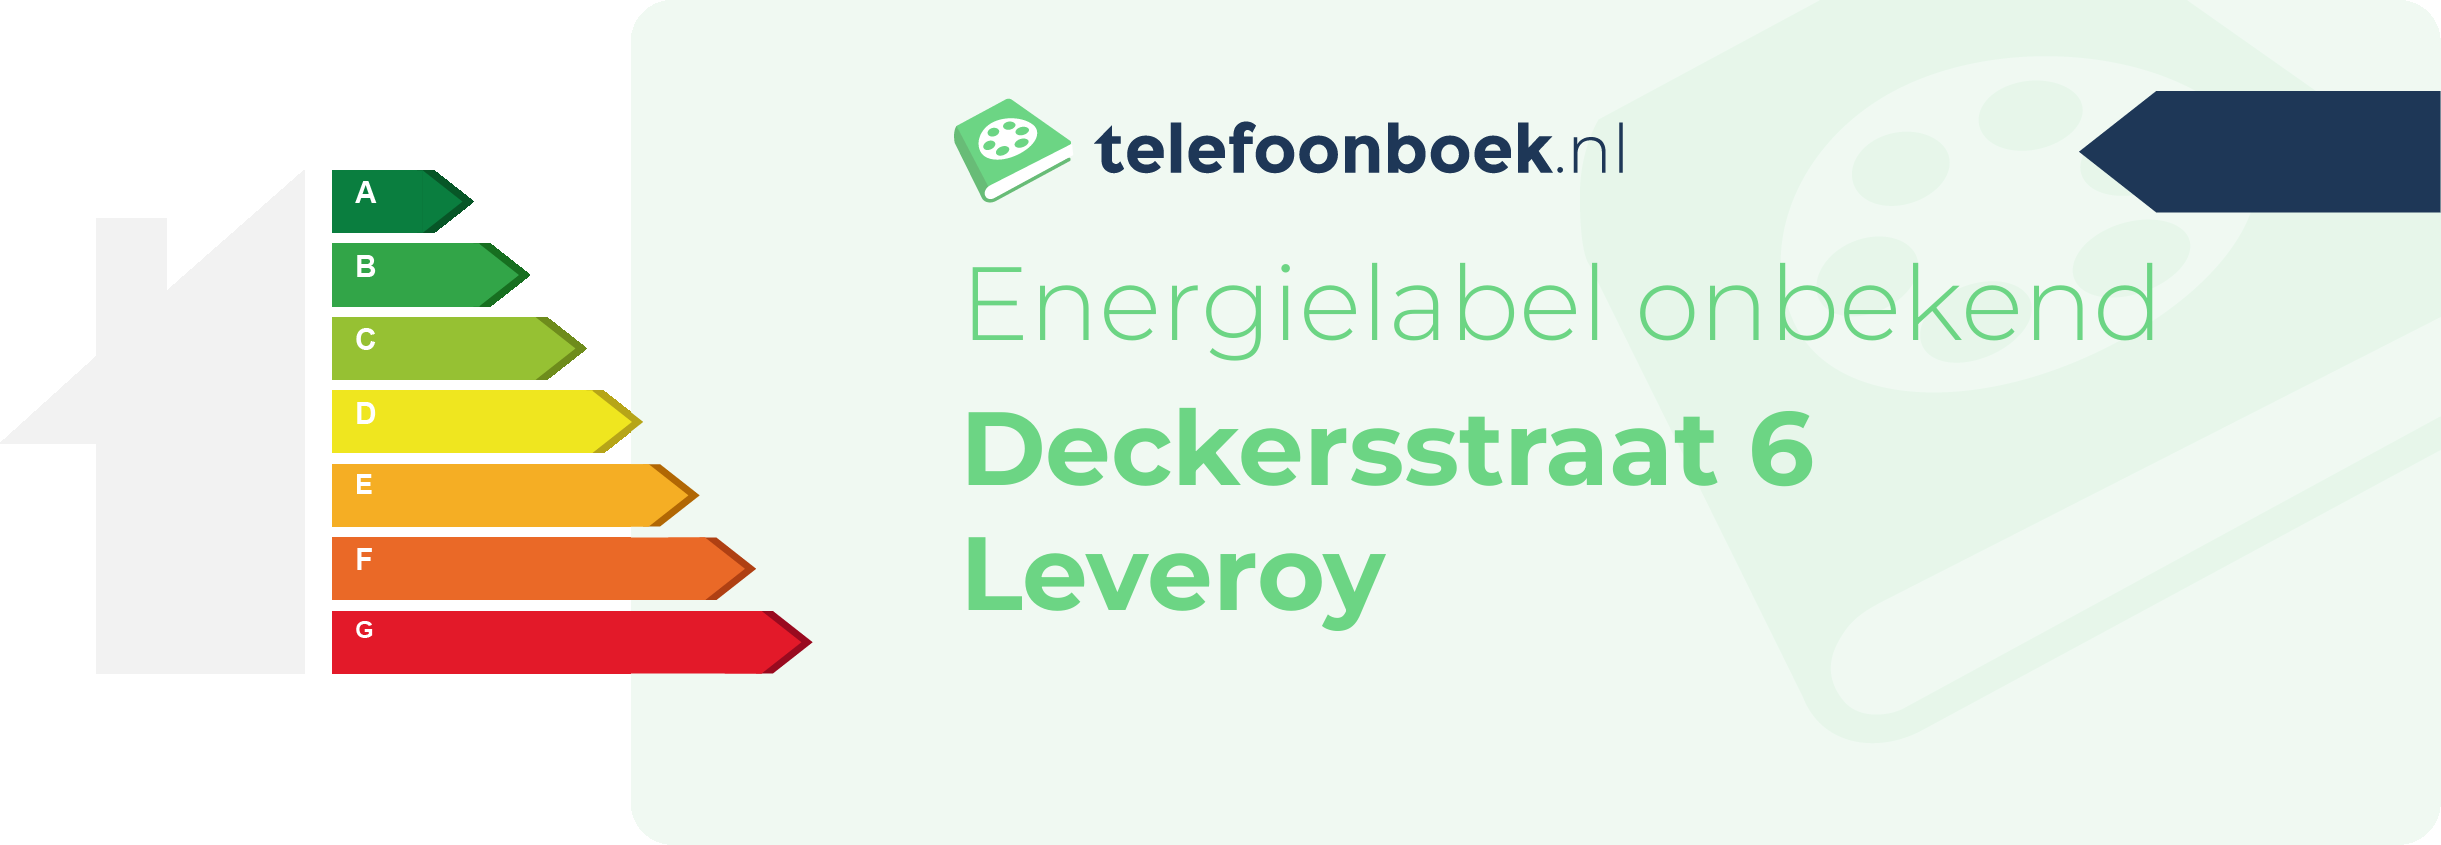 Energielabel Deckersstraat 6 Leveroy